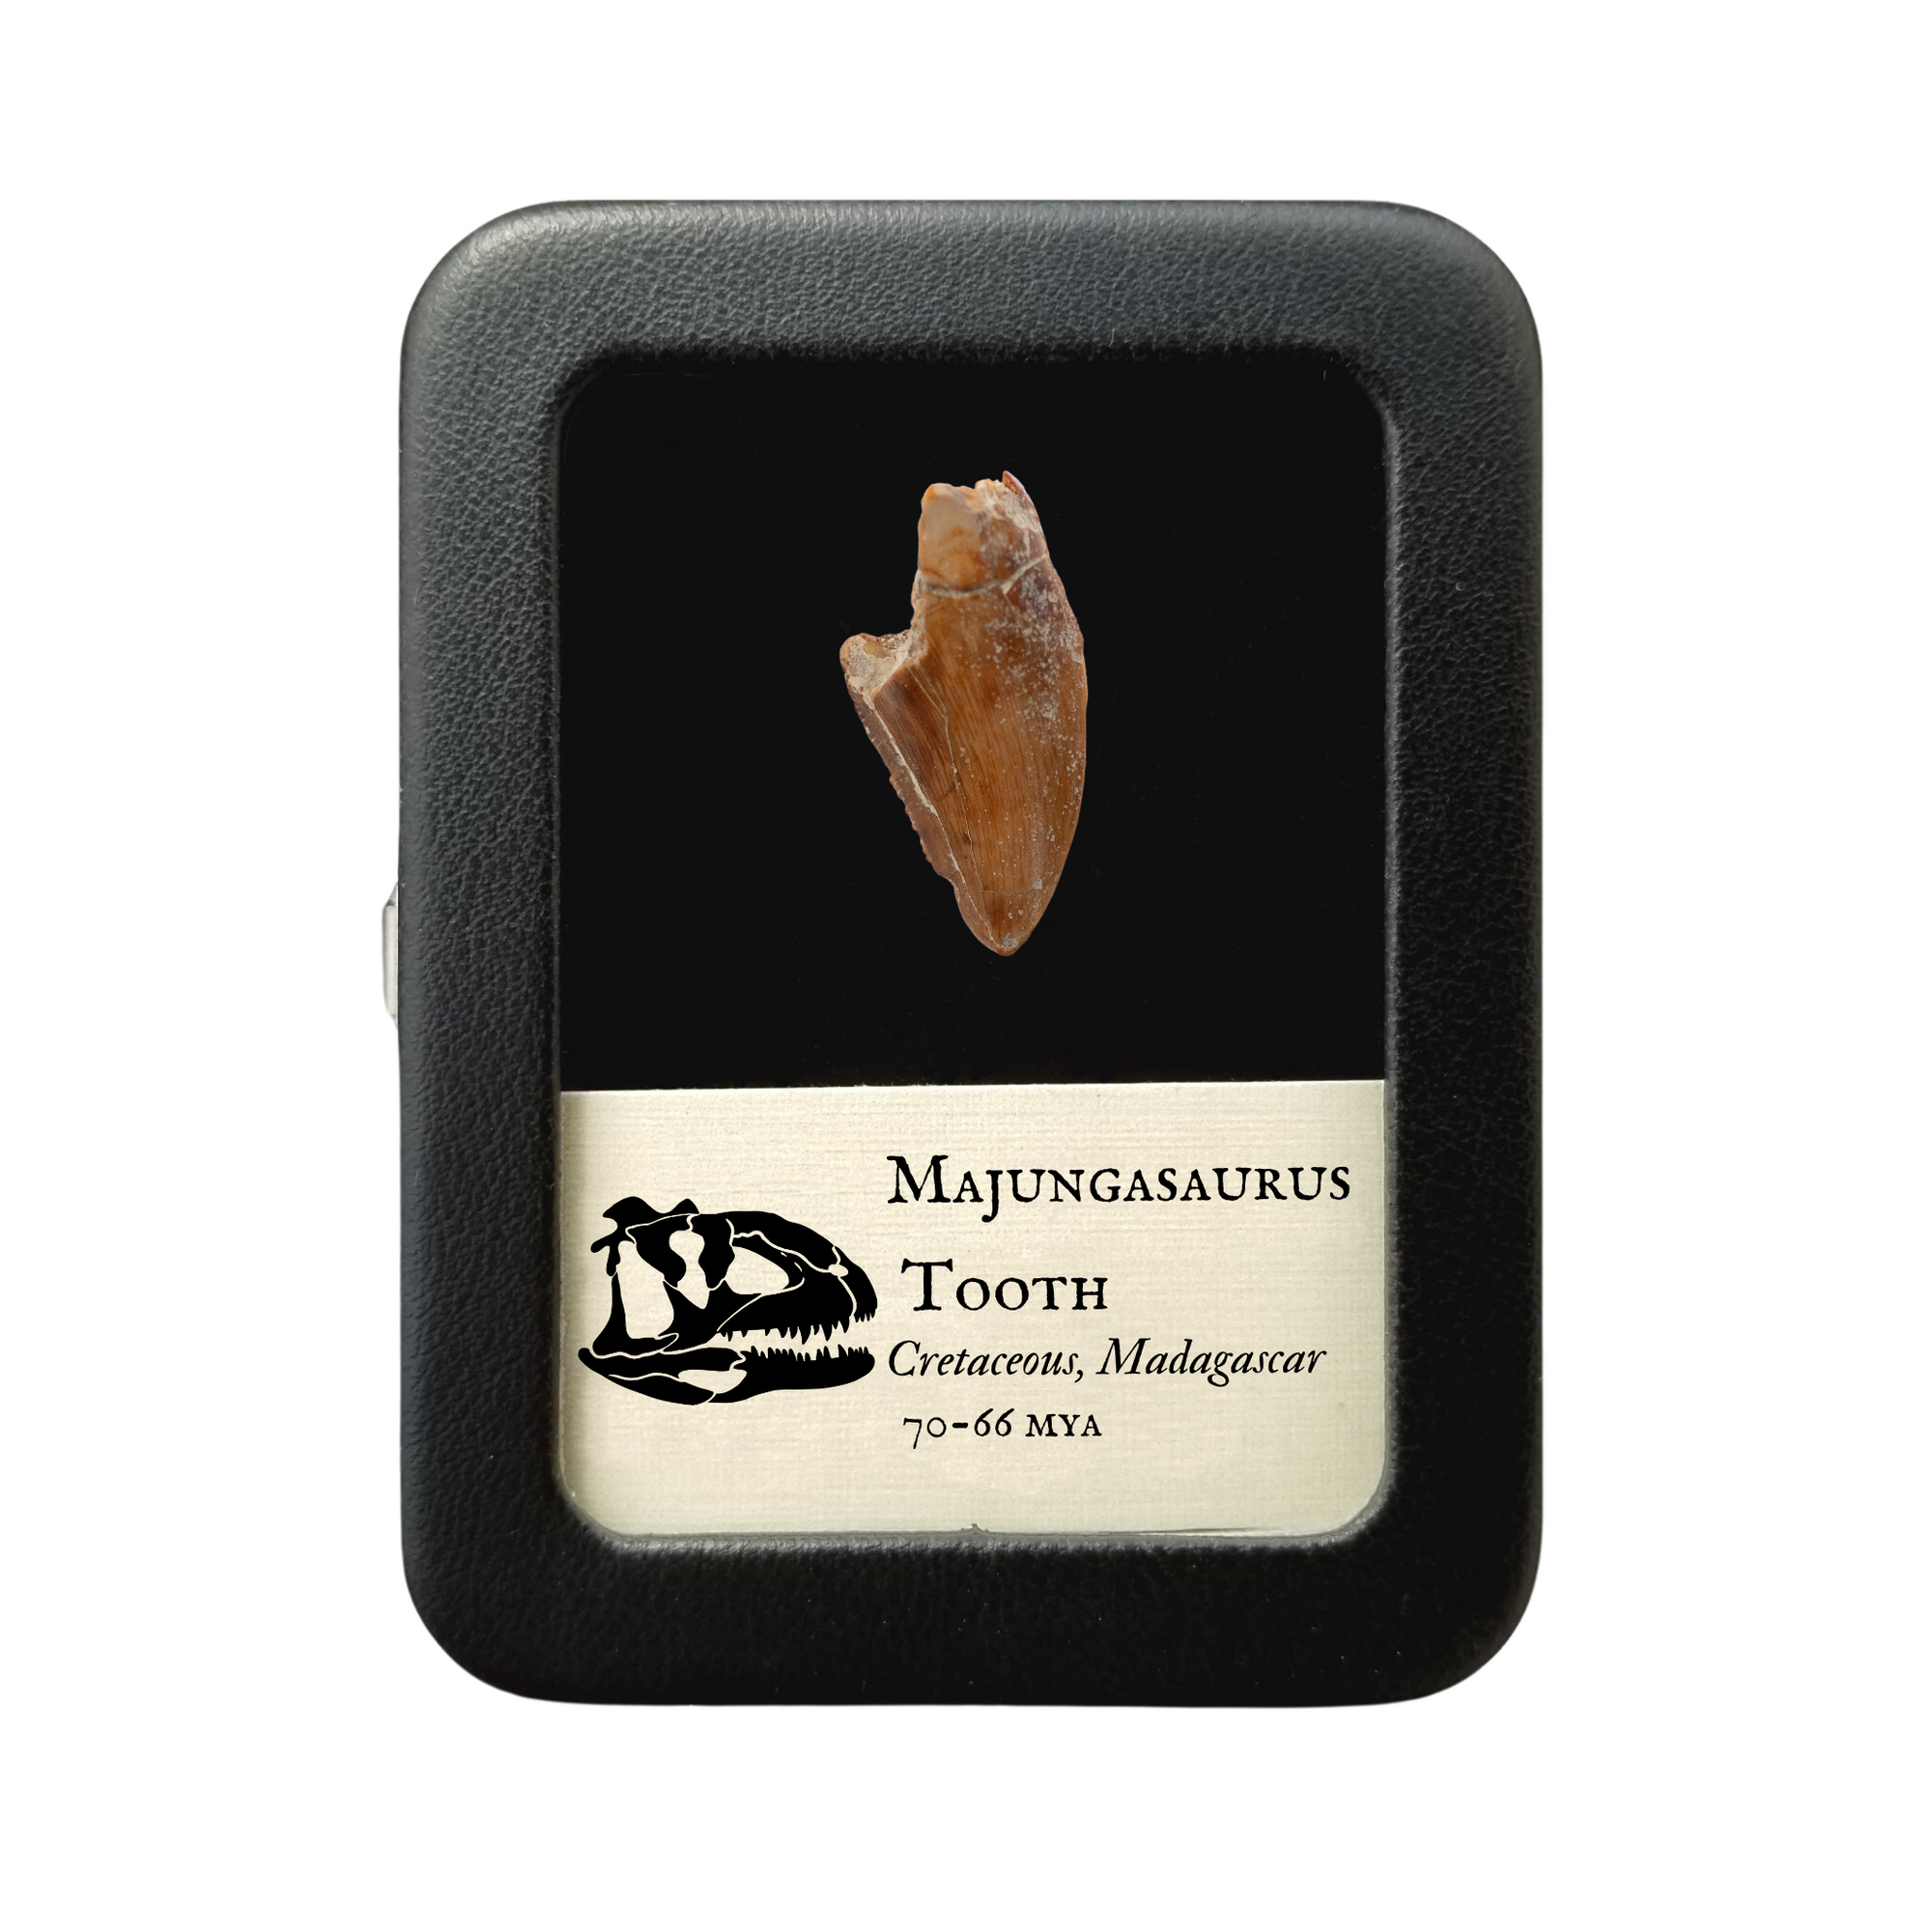 Majungasaurus Tooth 25mm - Cretaceous Period - 70 to 66 MYA - Madagascar